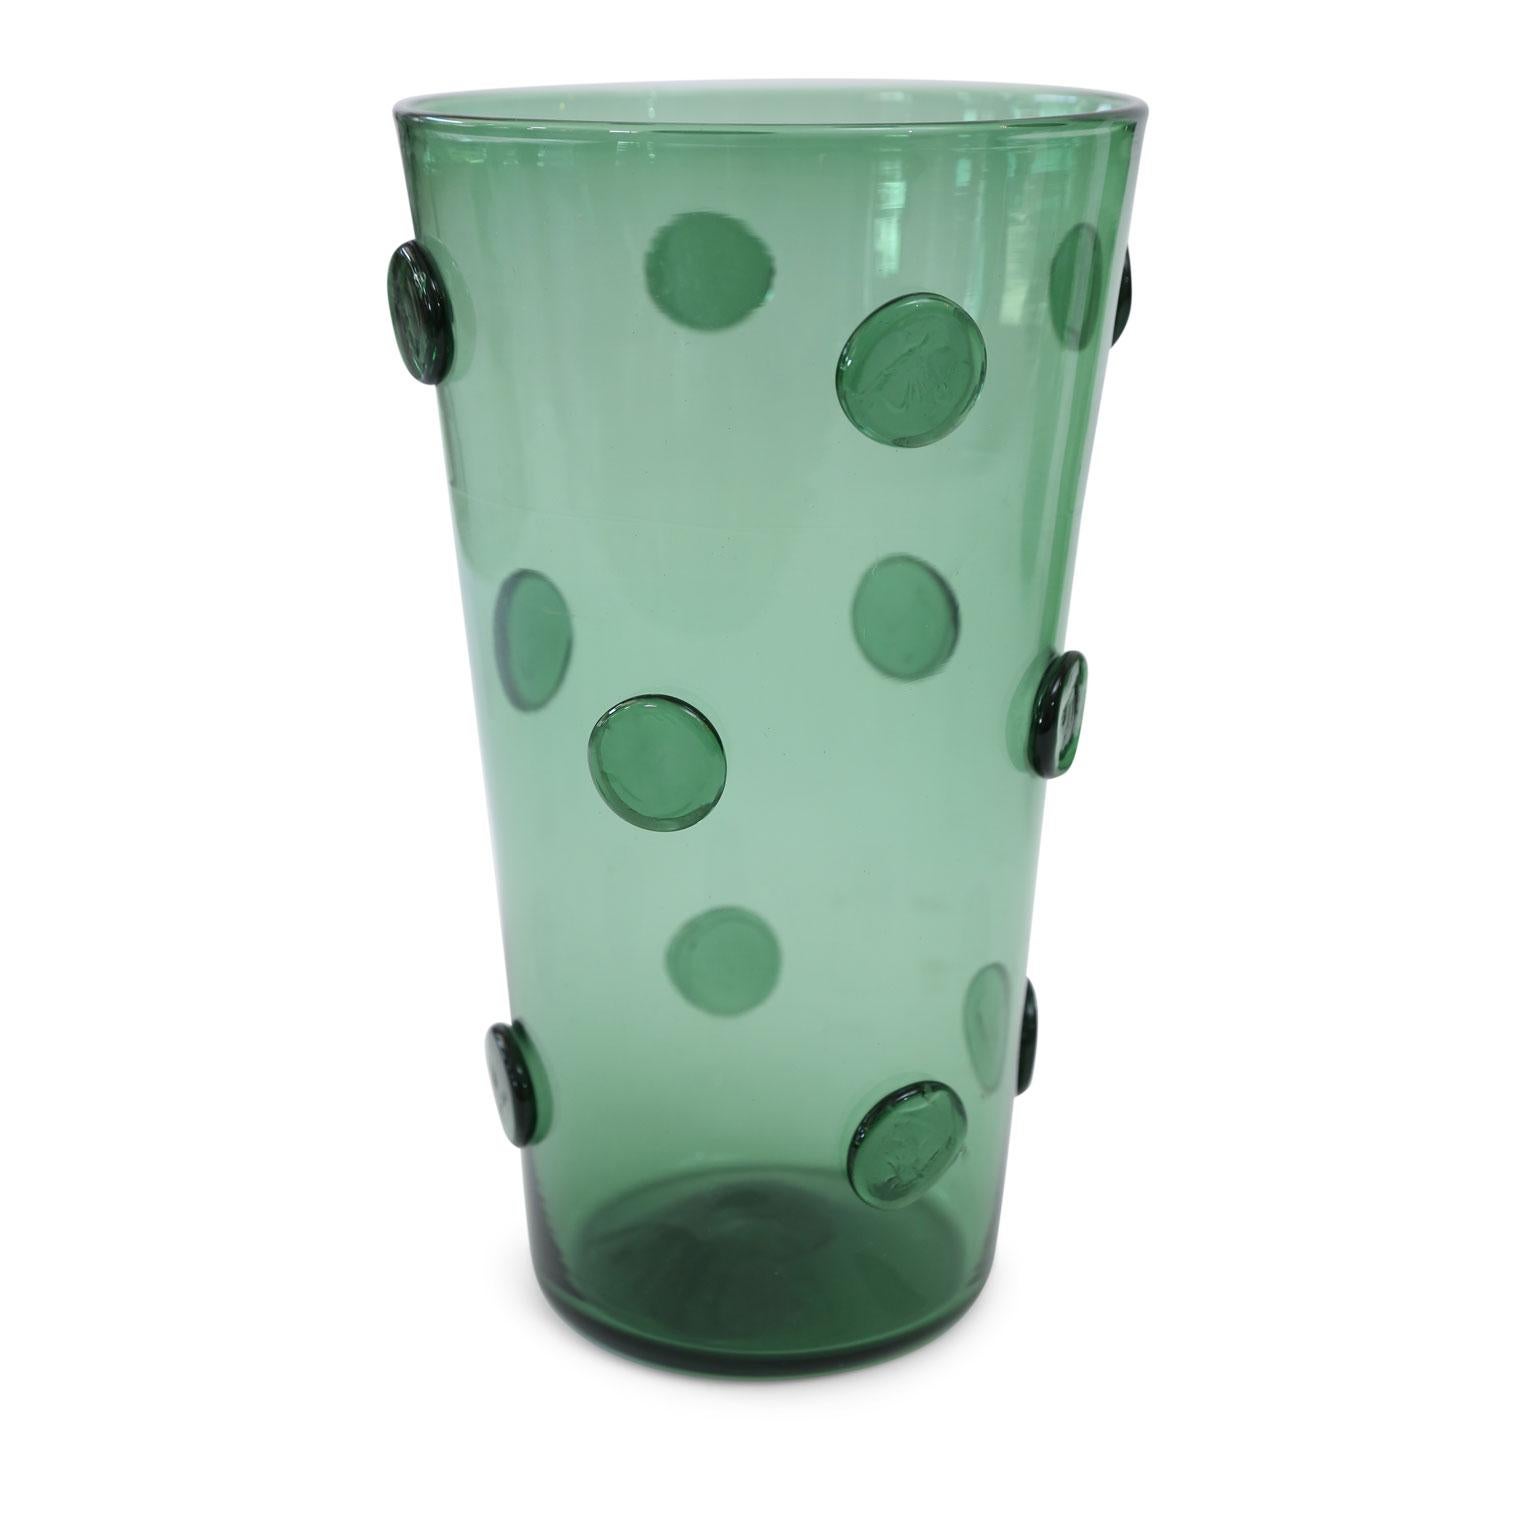 Mid-20th Century Italian Green Glass Vase